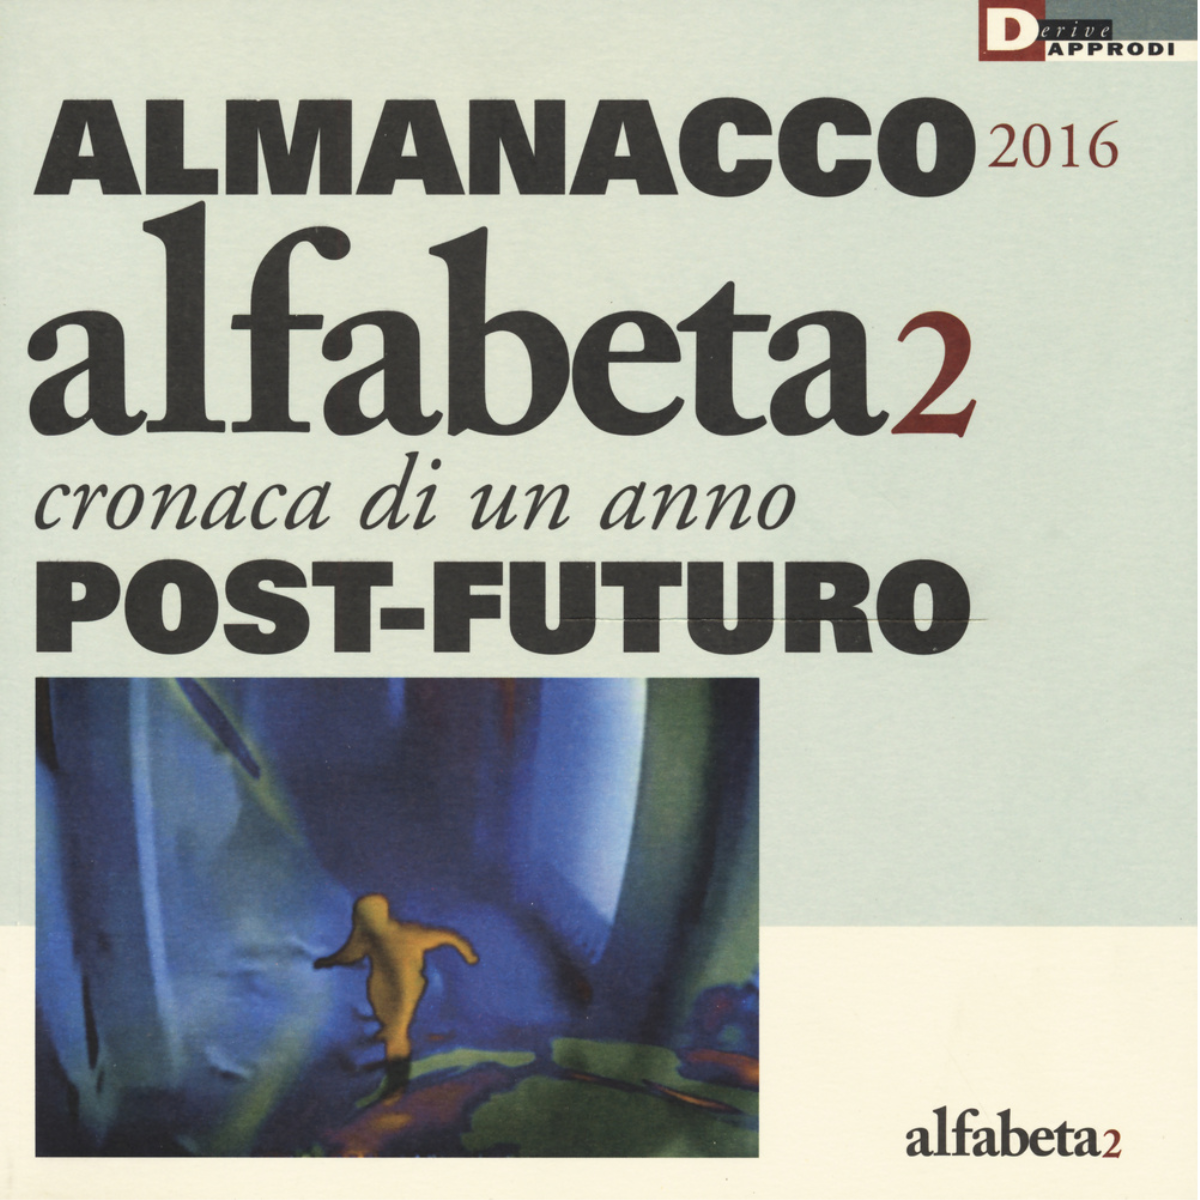 ALFABETA 2 - ALMANACCO 2016 - AA.VV. - DeriveApprodi editore, 2016